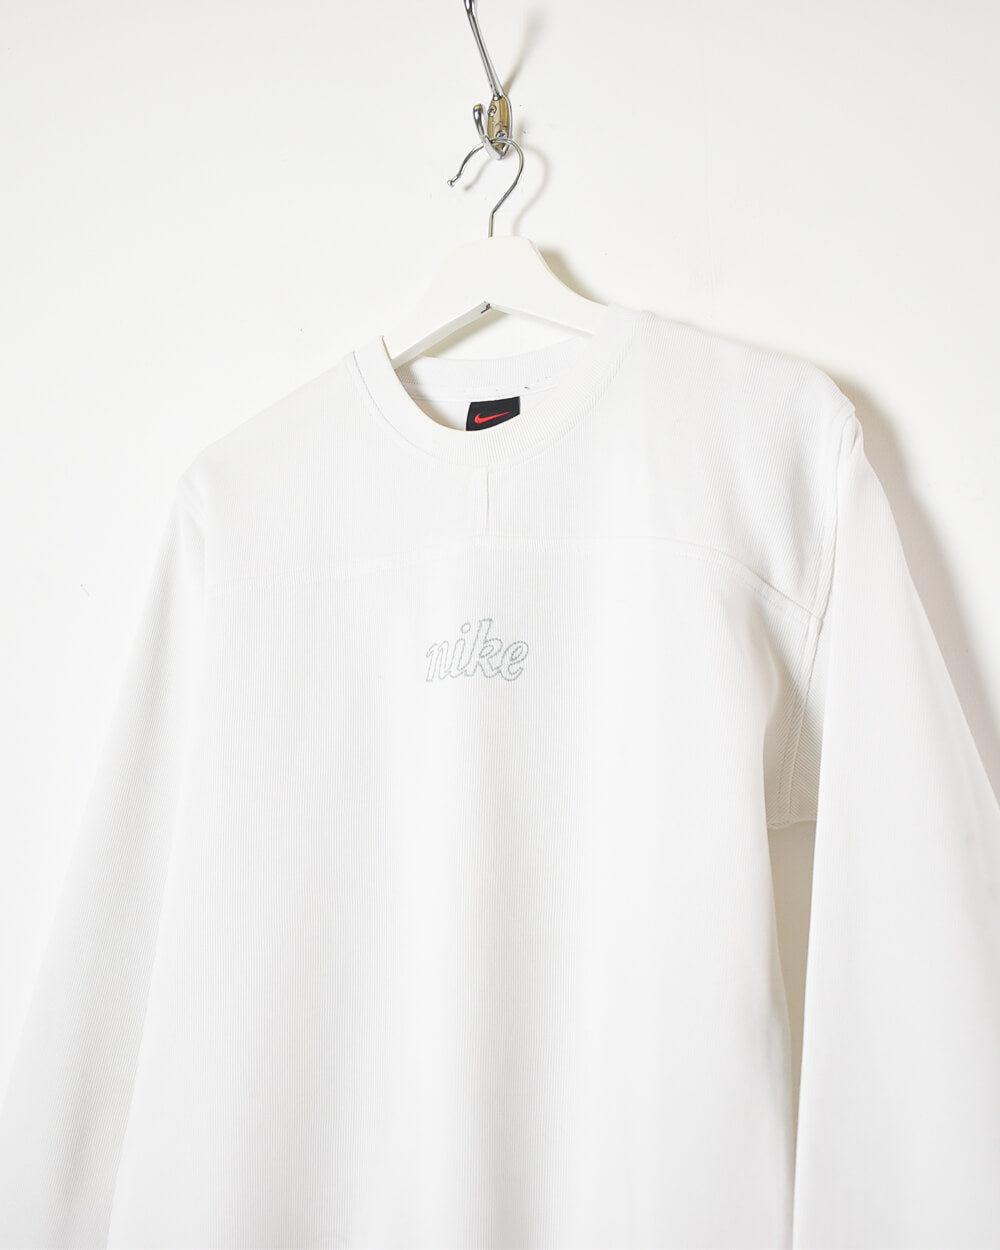 White Nike Women's Sweatshirt - Medium